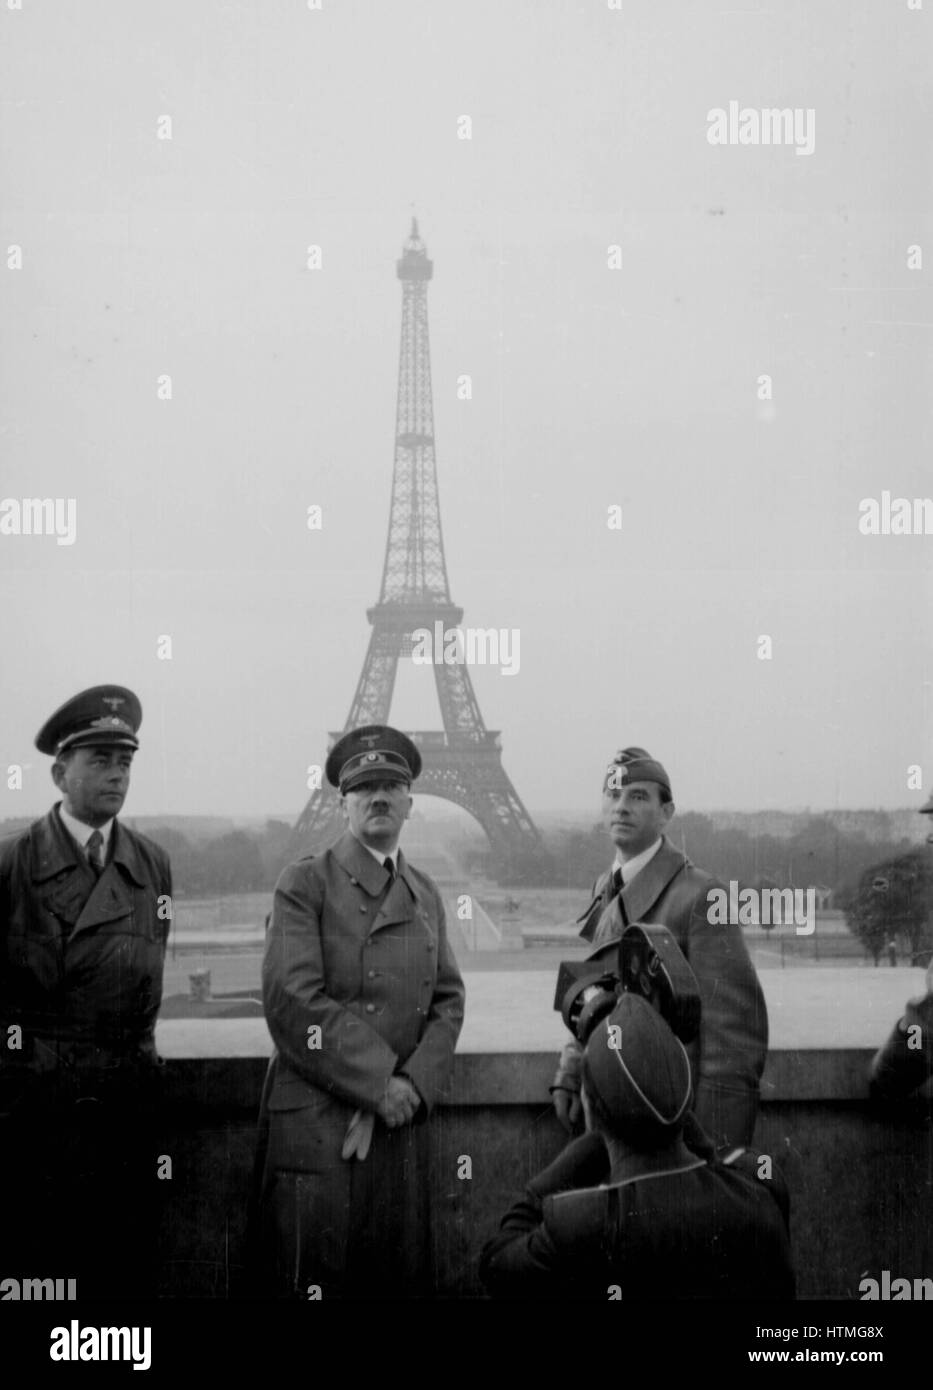 Adolf Hitler à Paris, France, juin 1940, la Tour Eiffel en arrière-plan. Paris a été occupée par les forces allemandes le 13 juin 1940. Banque D'Images